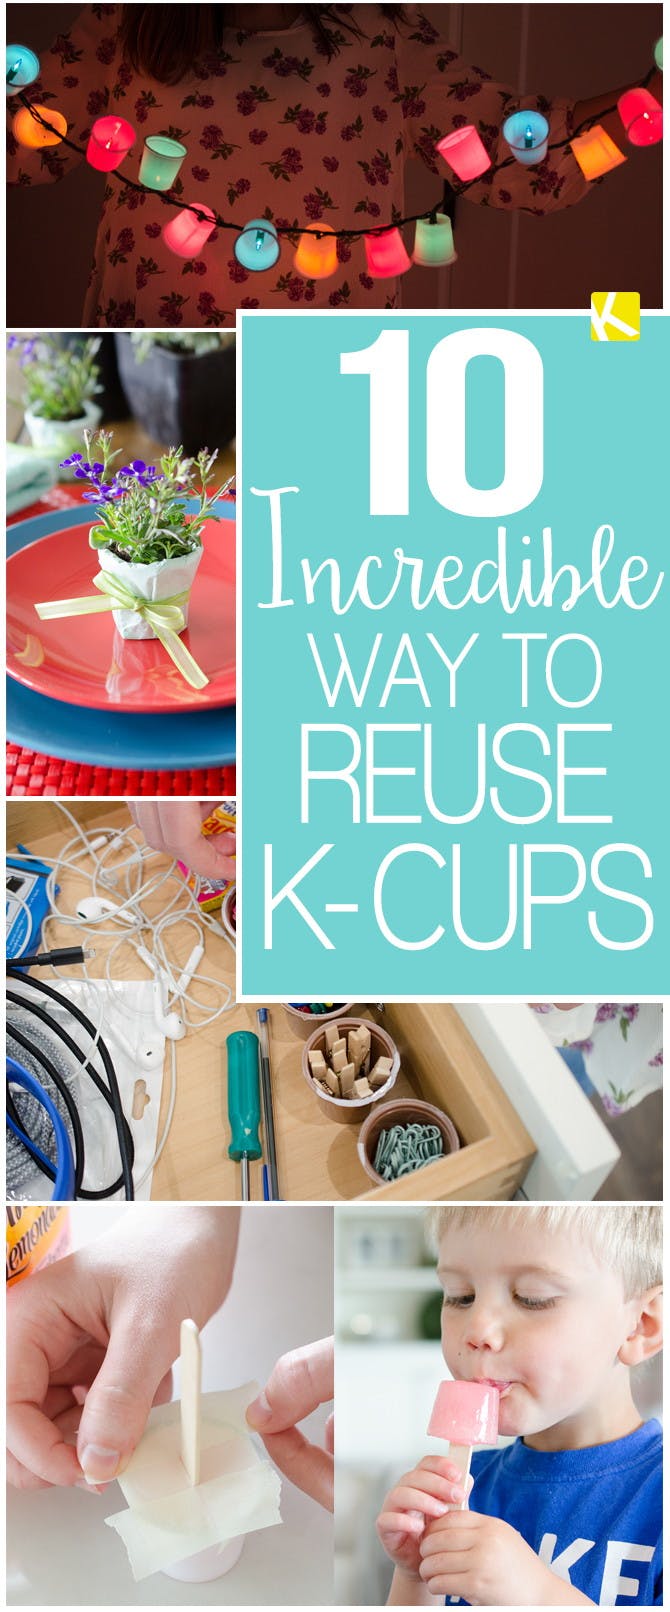 10 Incredible Ways to Reuse Keurig K-Cups